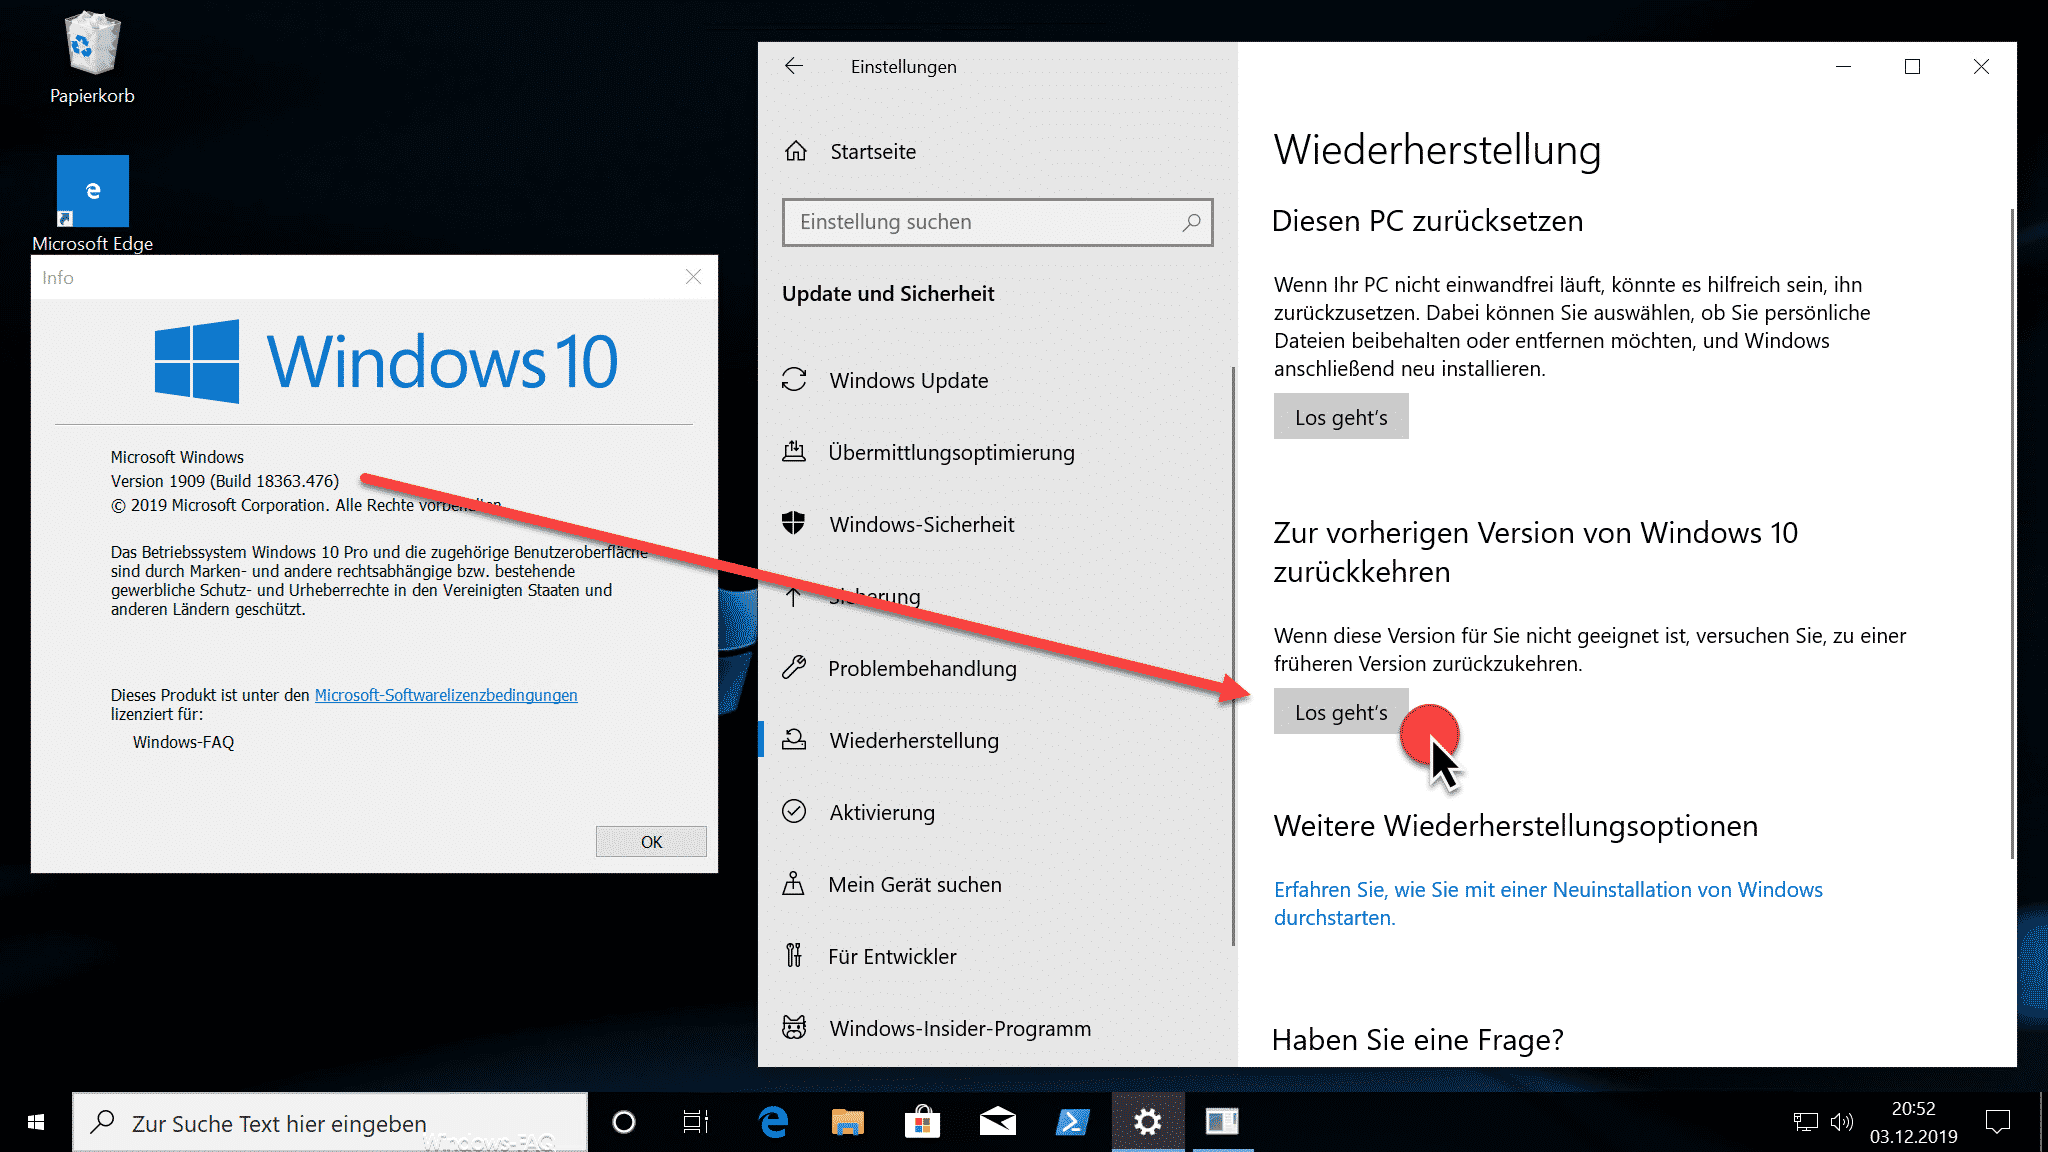 Zur vorherigen Version von Windows 10 zurückkehren